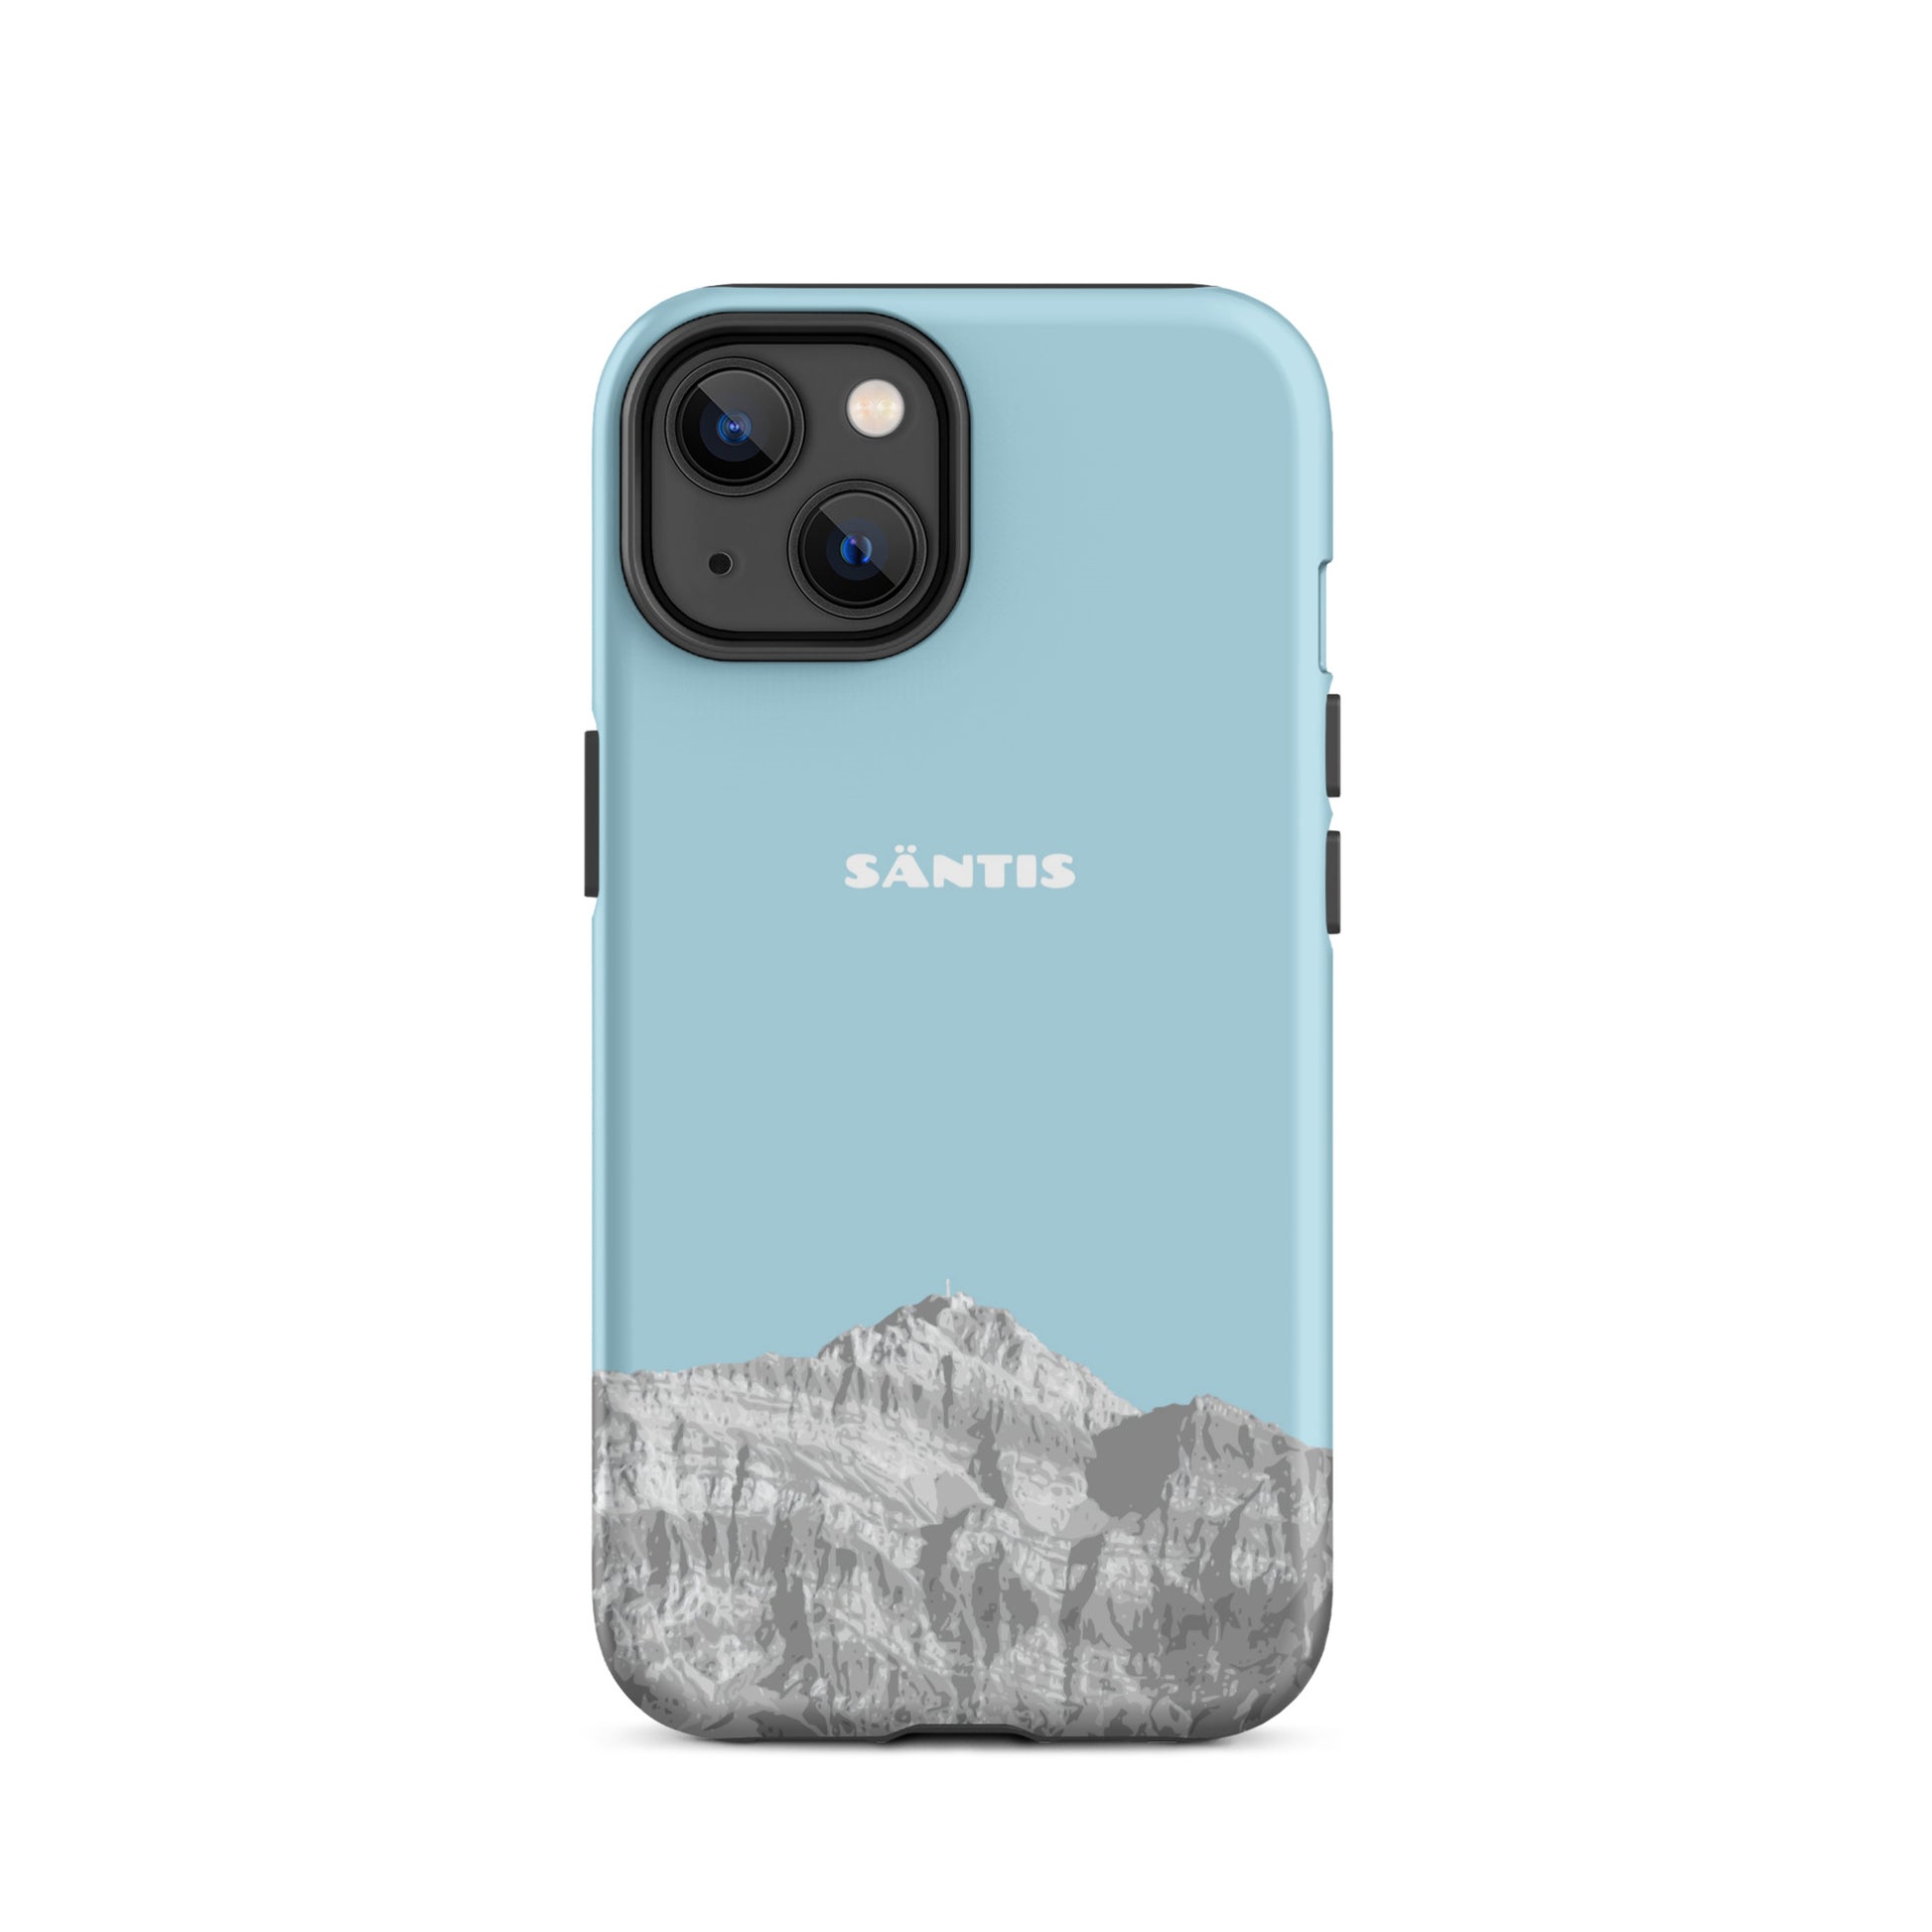 Hülle für das iPhone 14 von Apple in der Farbe Hellblau, dass den Säntis im Alpstein zeigt.